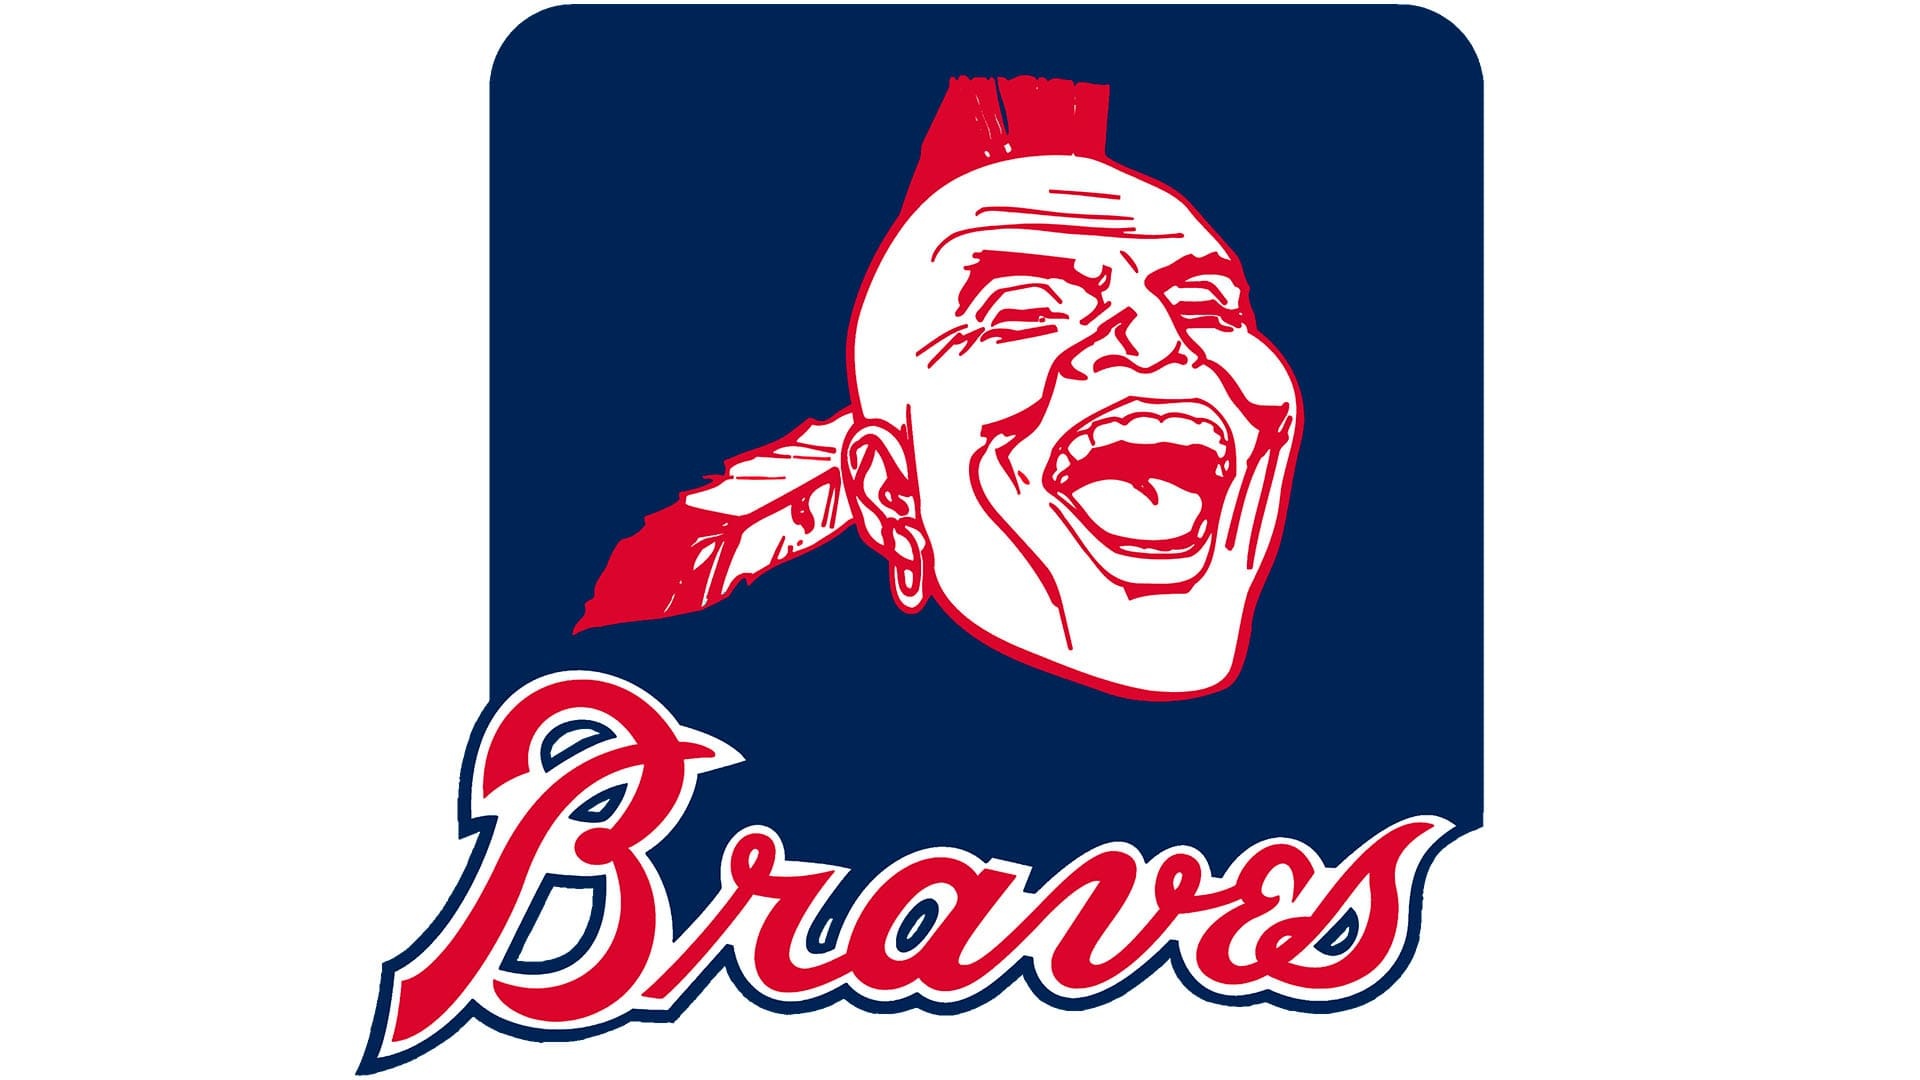 Atlanta Braves, Team logo, Emblem meaning, Symbolic history, 1920x1080 Full HD Desktop